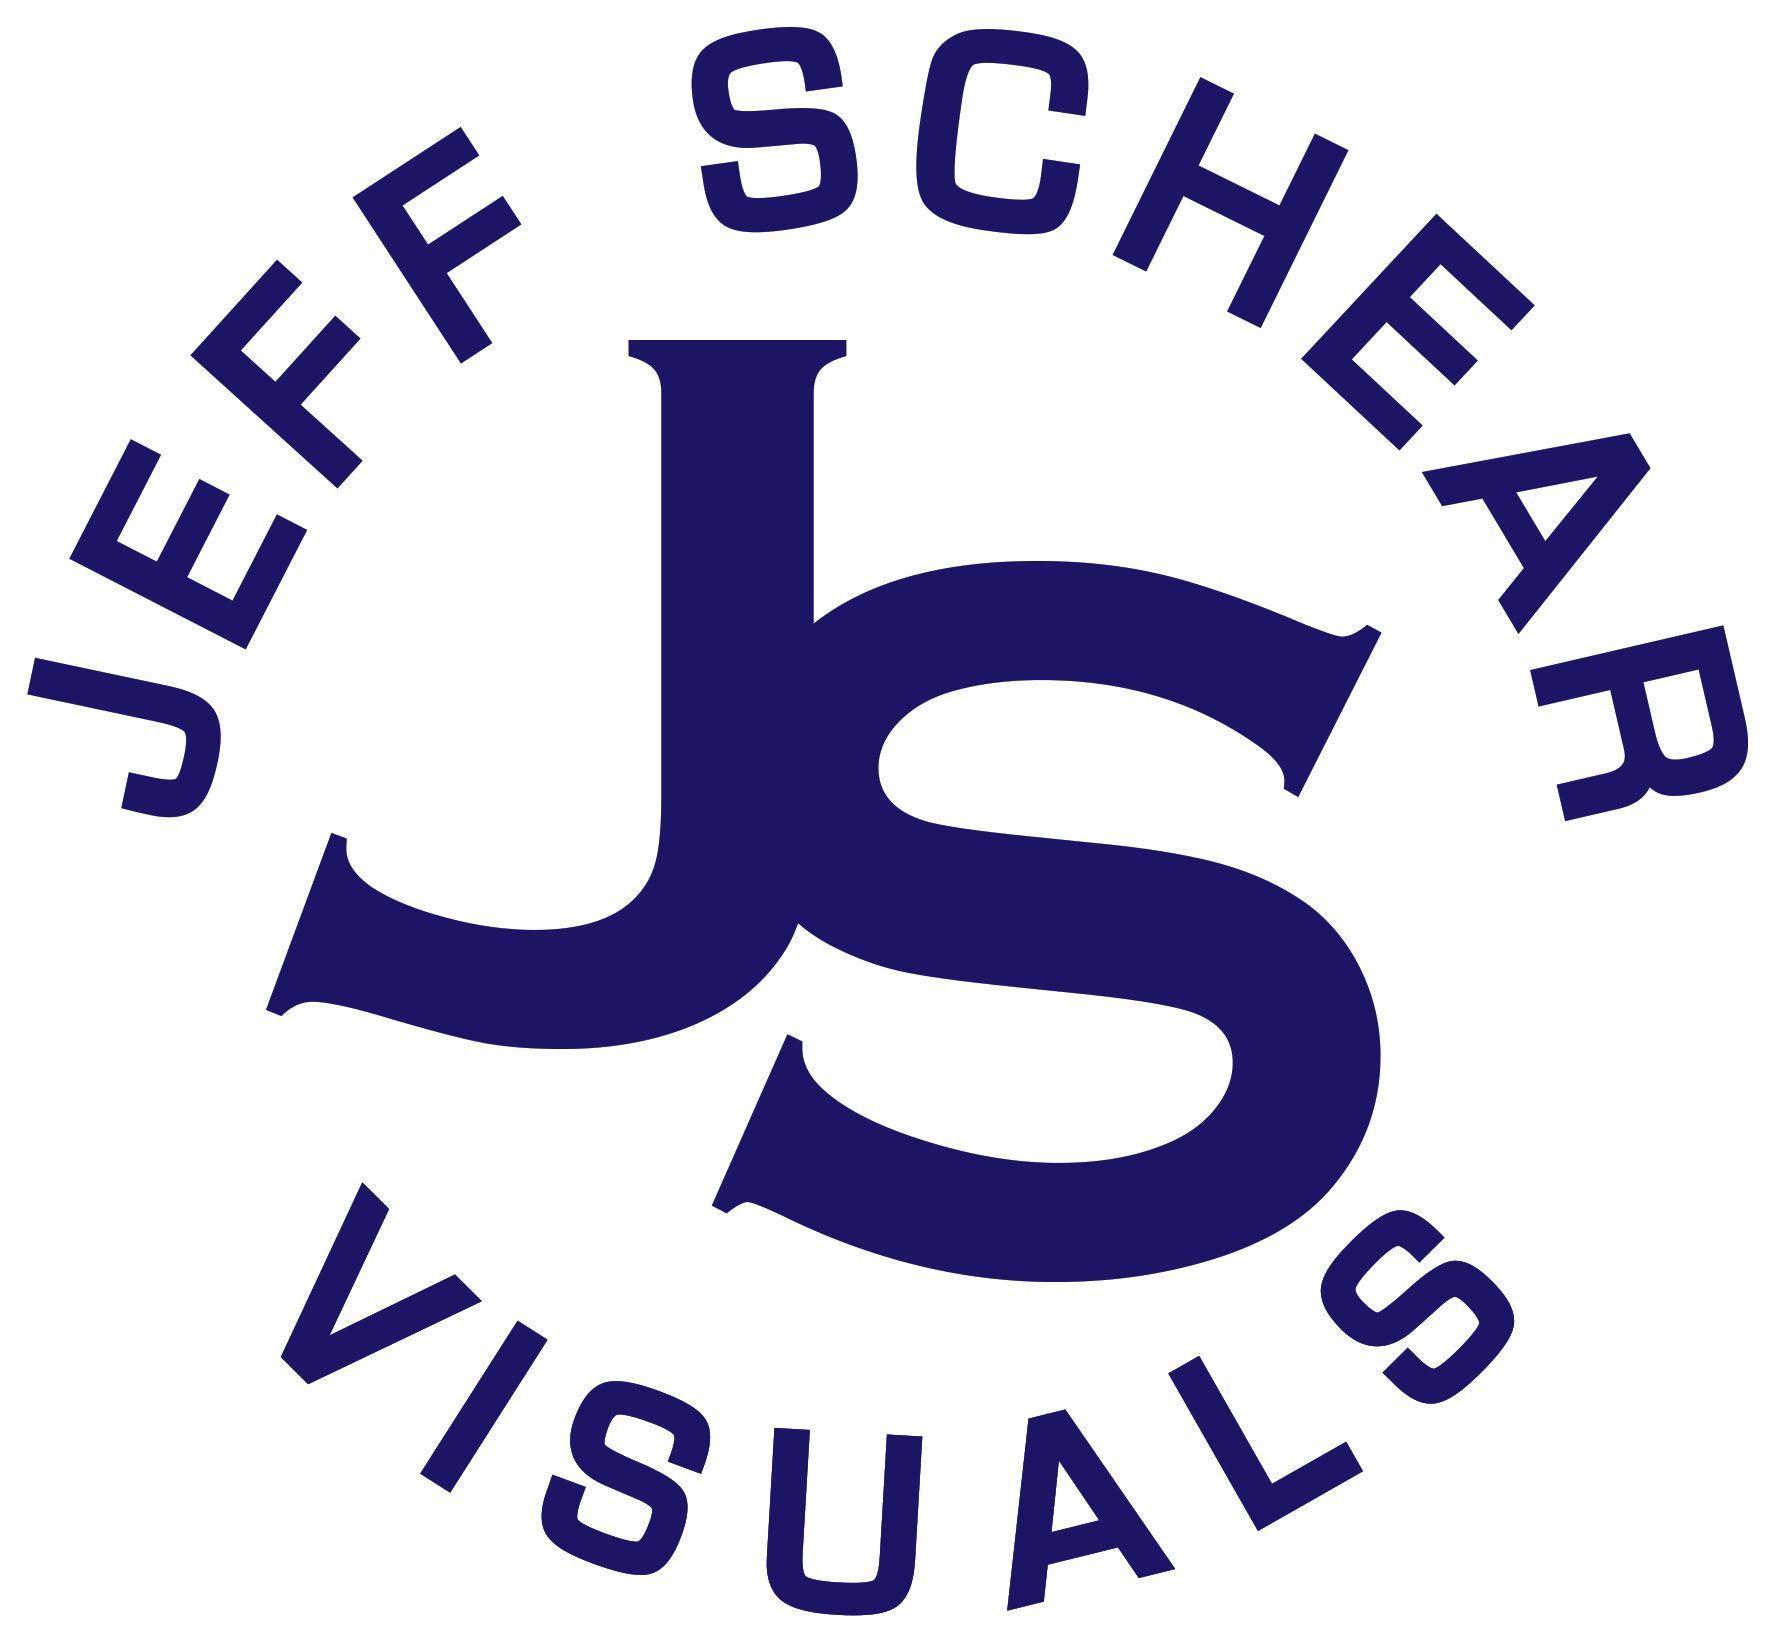 Jeff Schear Visuals